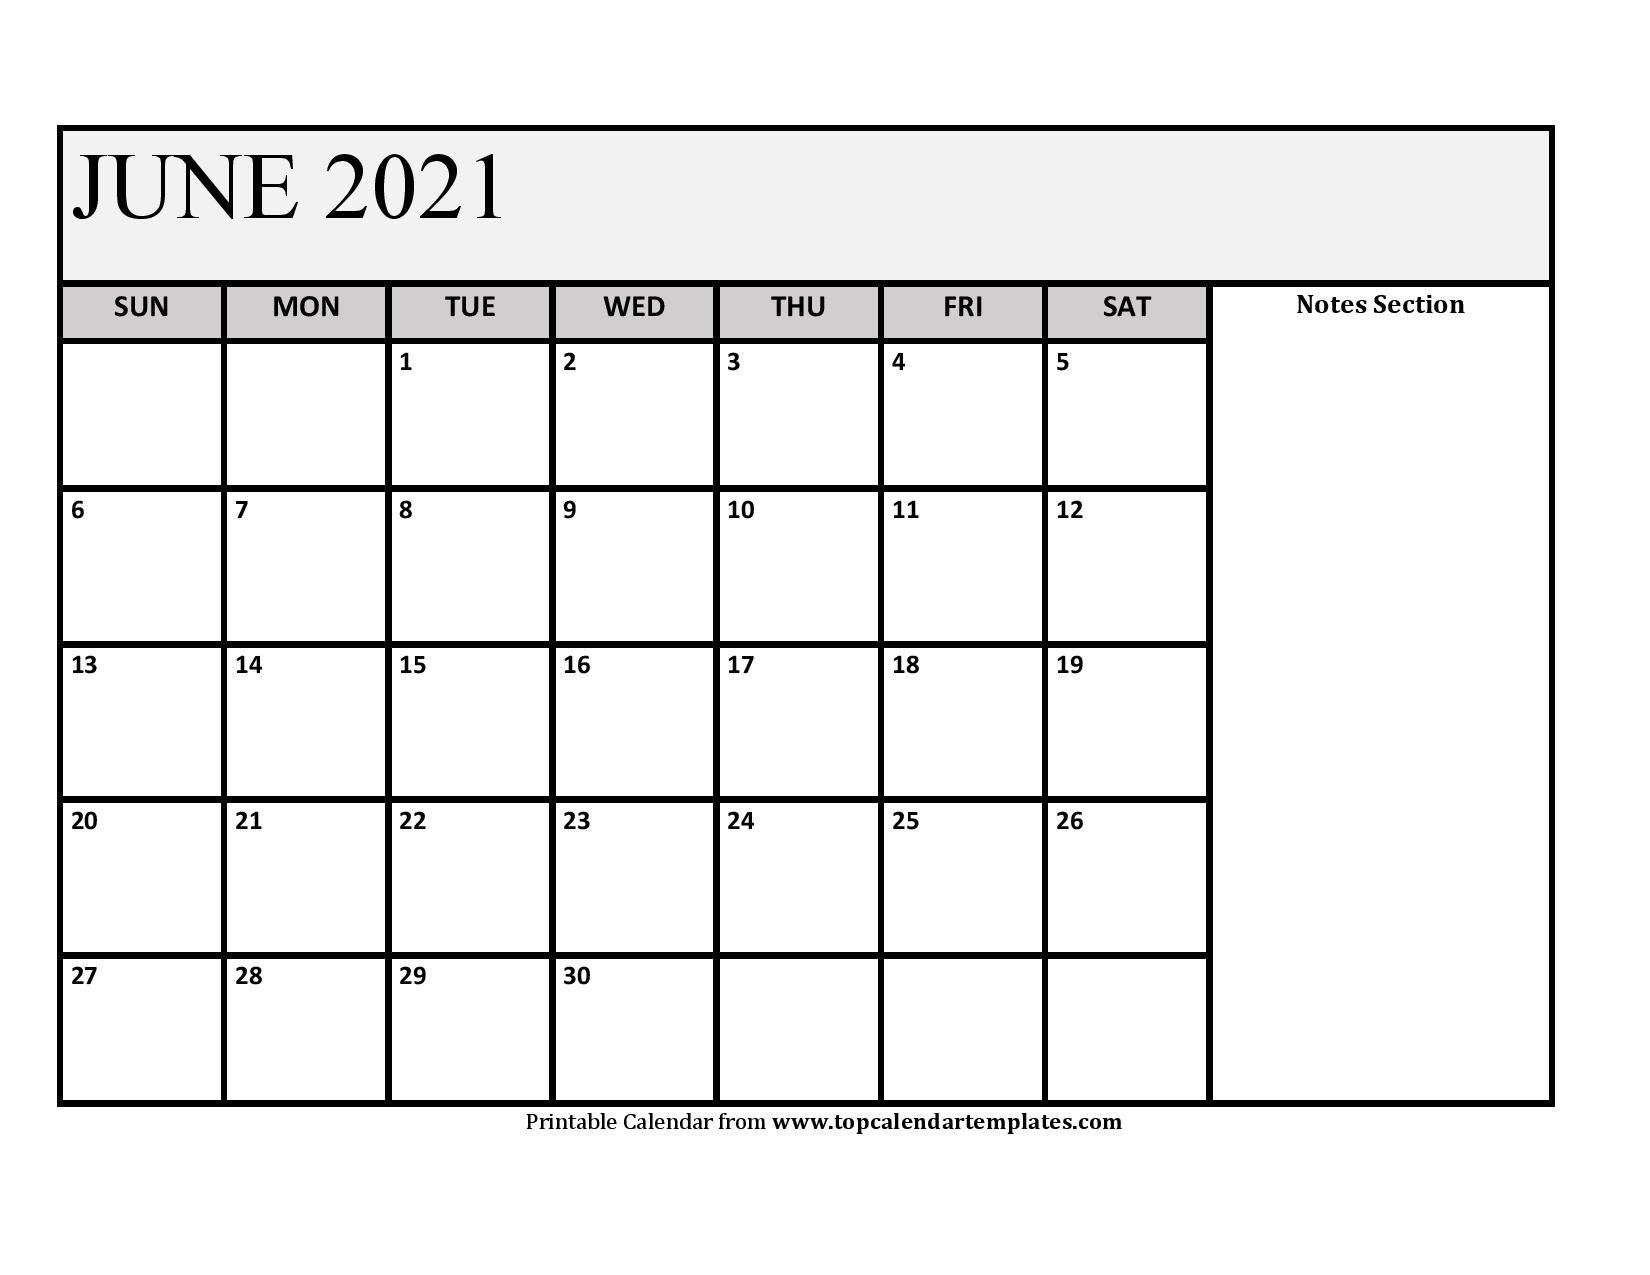 June 2021 Printable Calendar - Monthly Templates June 2021 Calendar Sheet